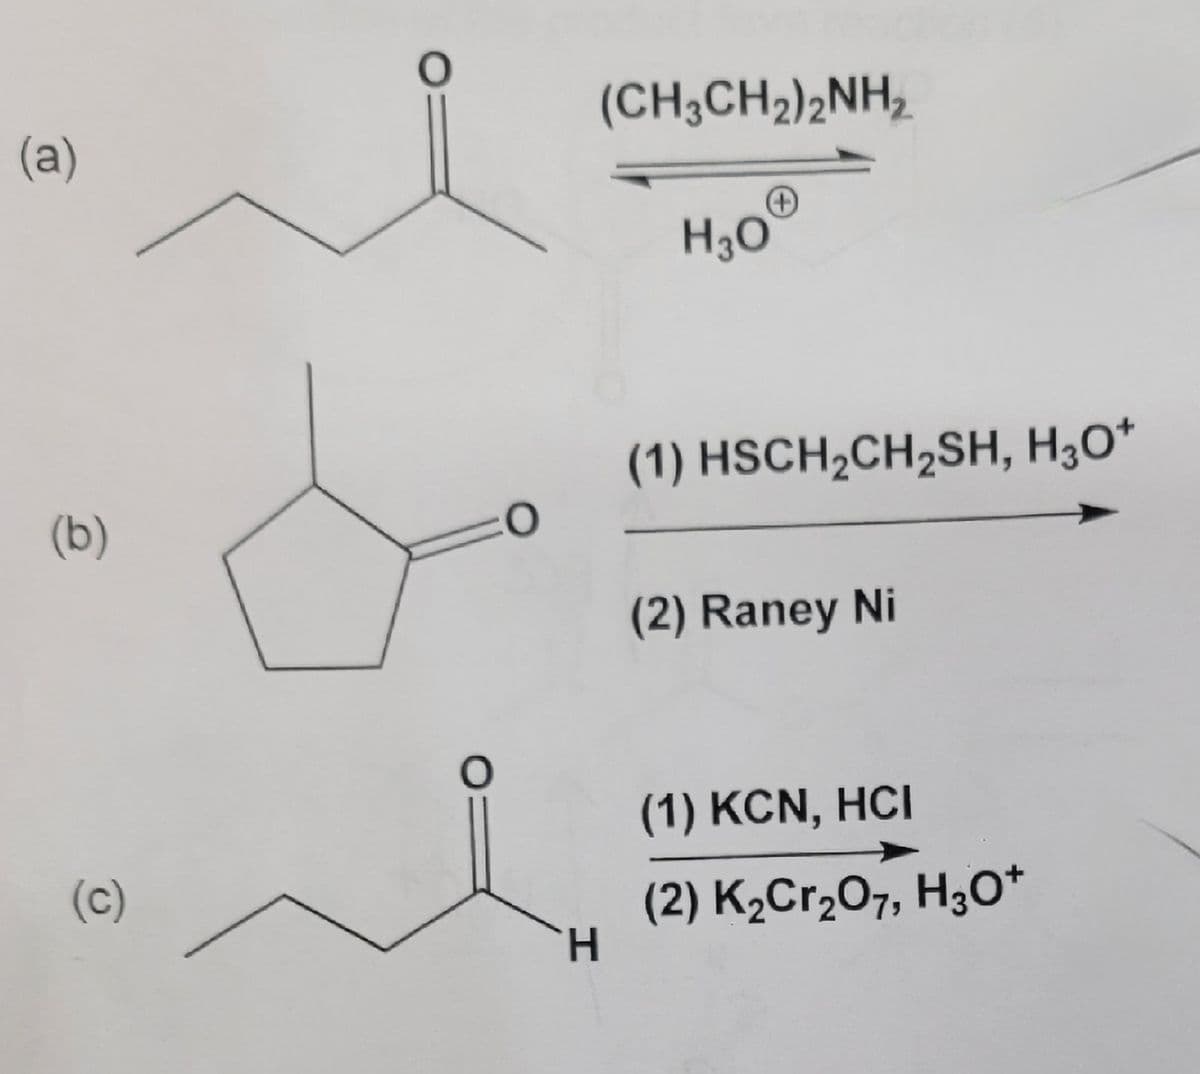 (a)
(b)
(c)
O
O
0
(CH3CH₂)2NH₂
H
H3O
(1) HSCH₂CH₂SH, H3O+
(2) Raney Ni
(1) KCN, HCI
(2) K₂Cr₂O7, H3O+